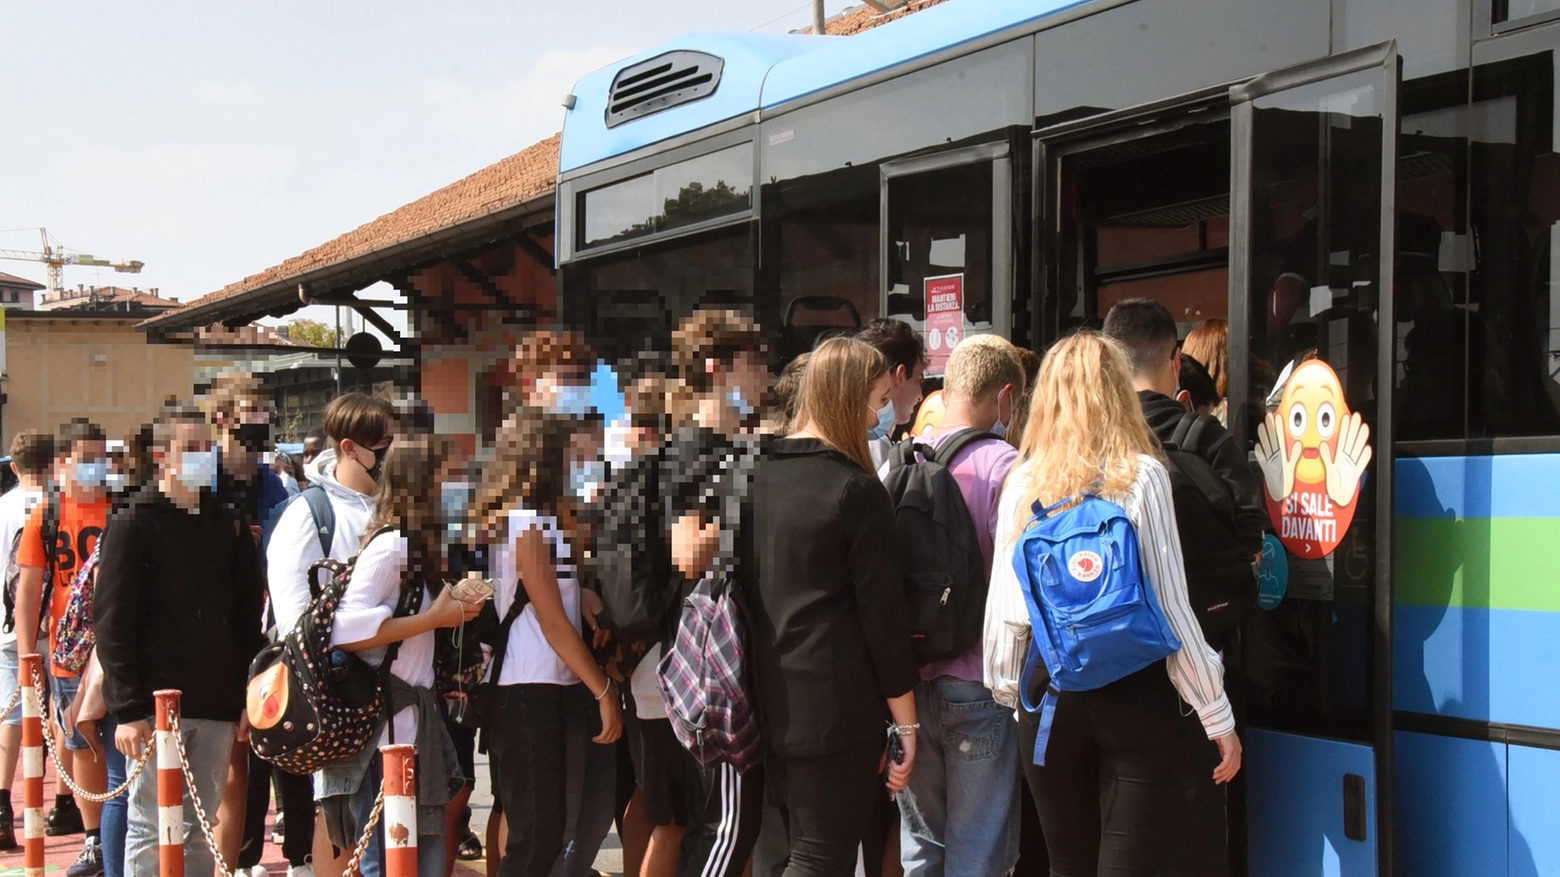 Studenti prendono l'autobus per andare a scuola